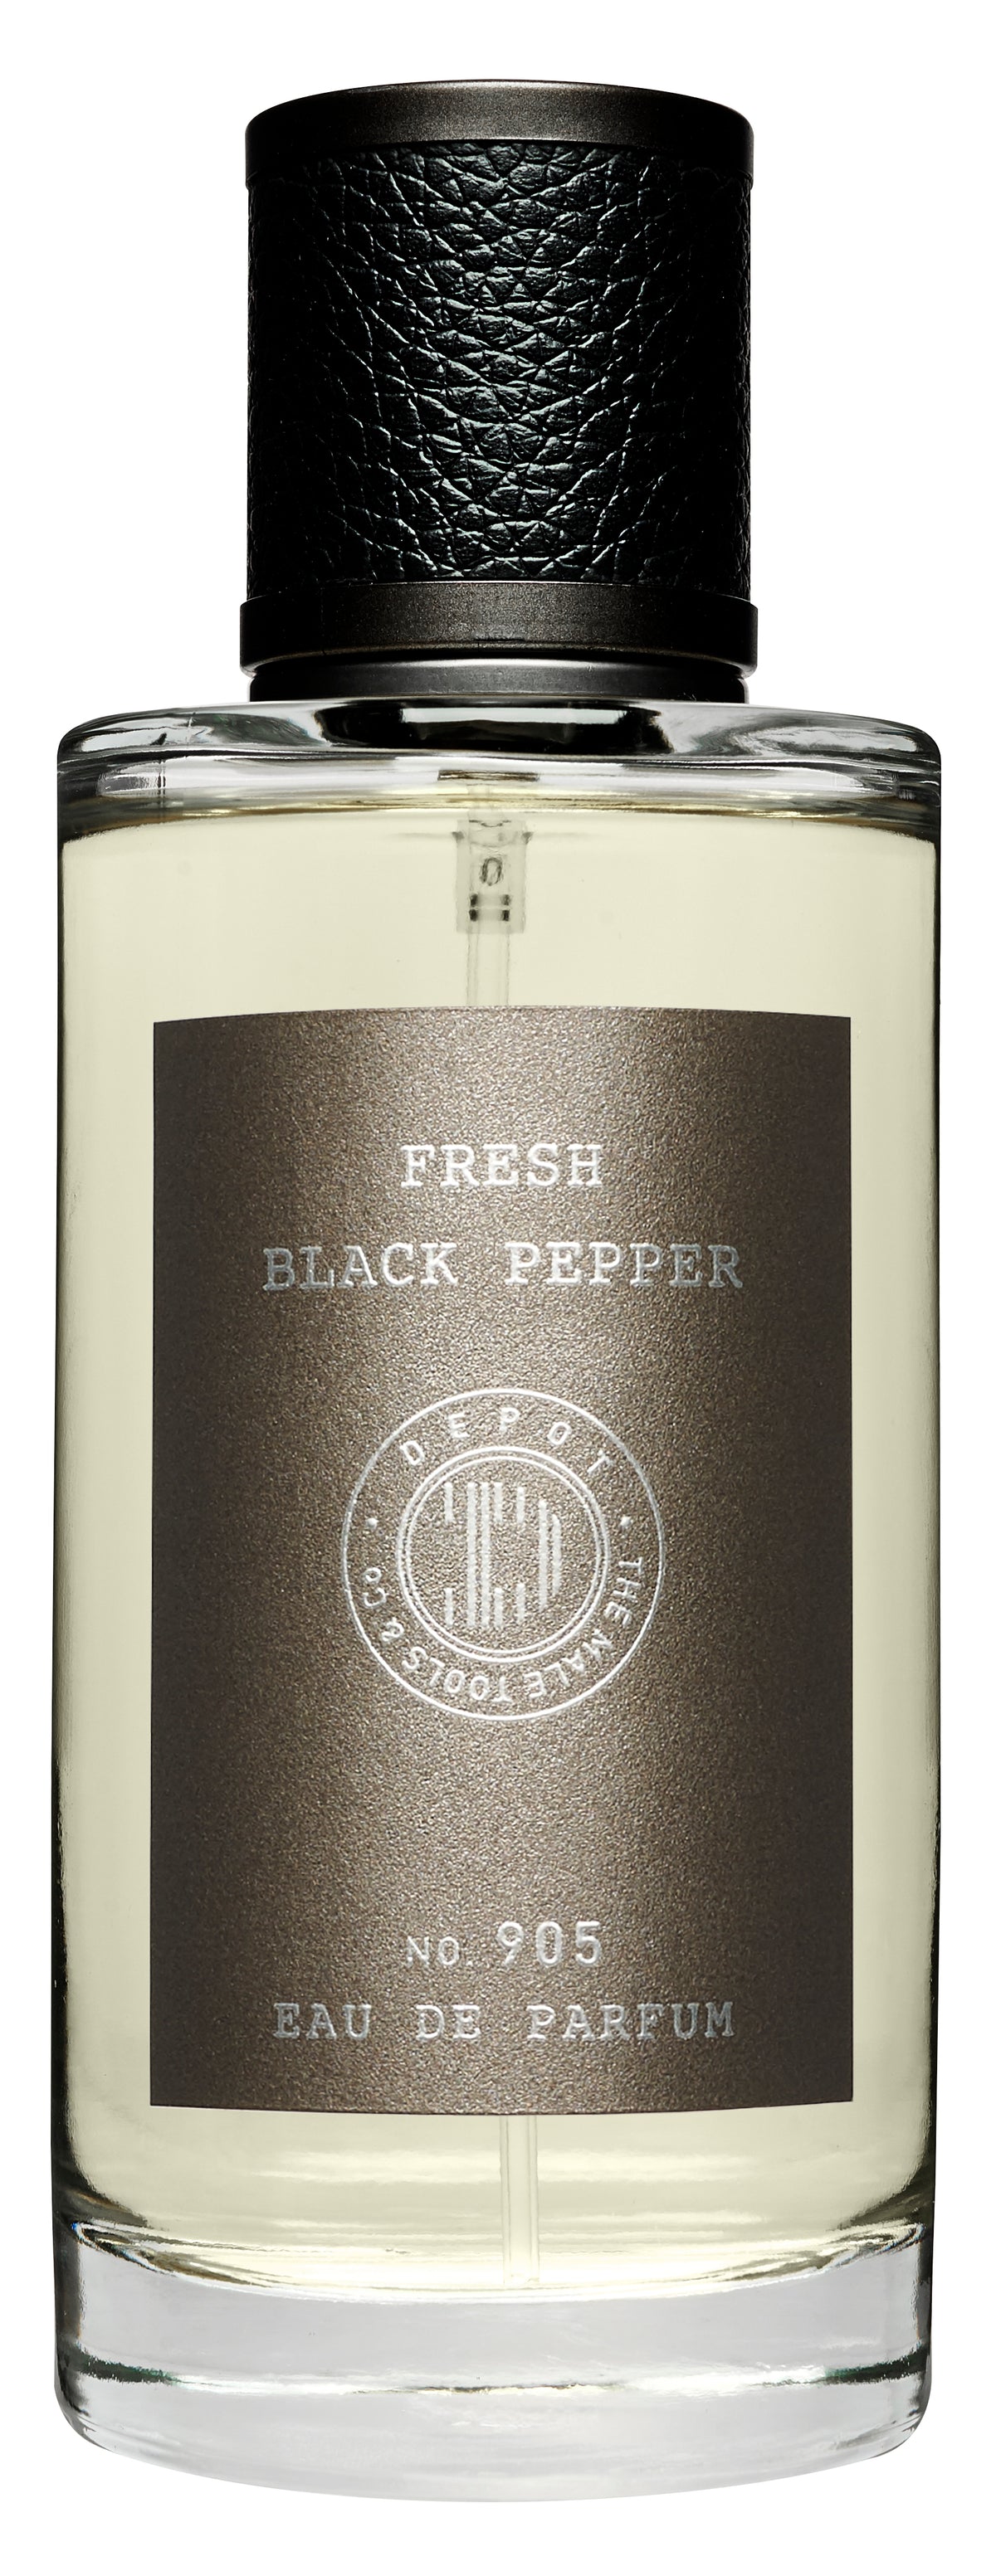 Eau de Parfum - Fresh black pepper - Ilmur